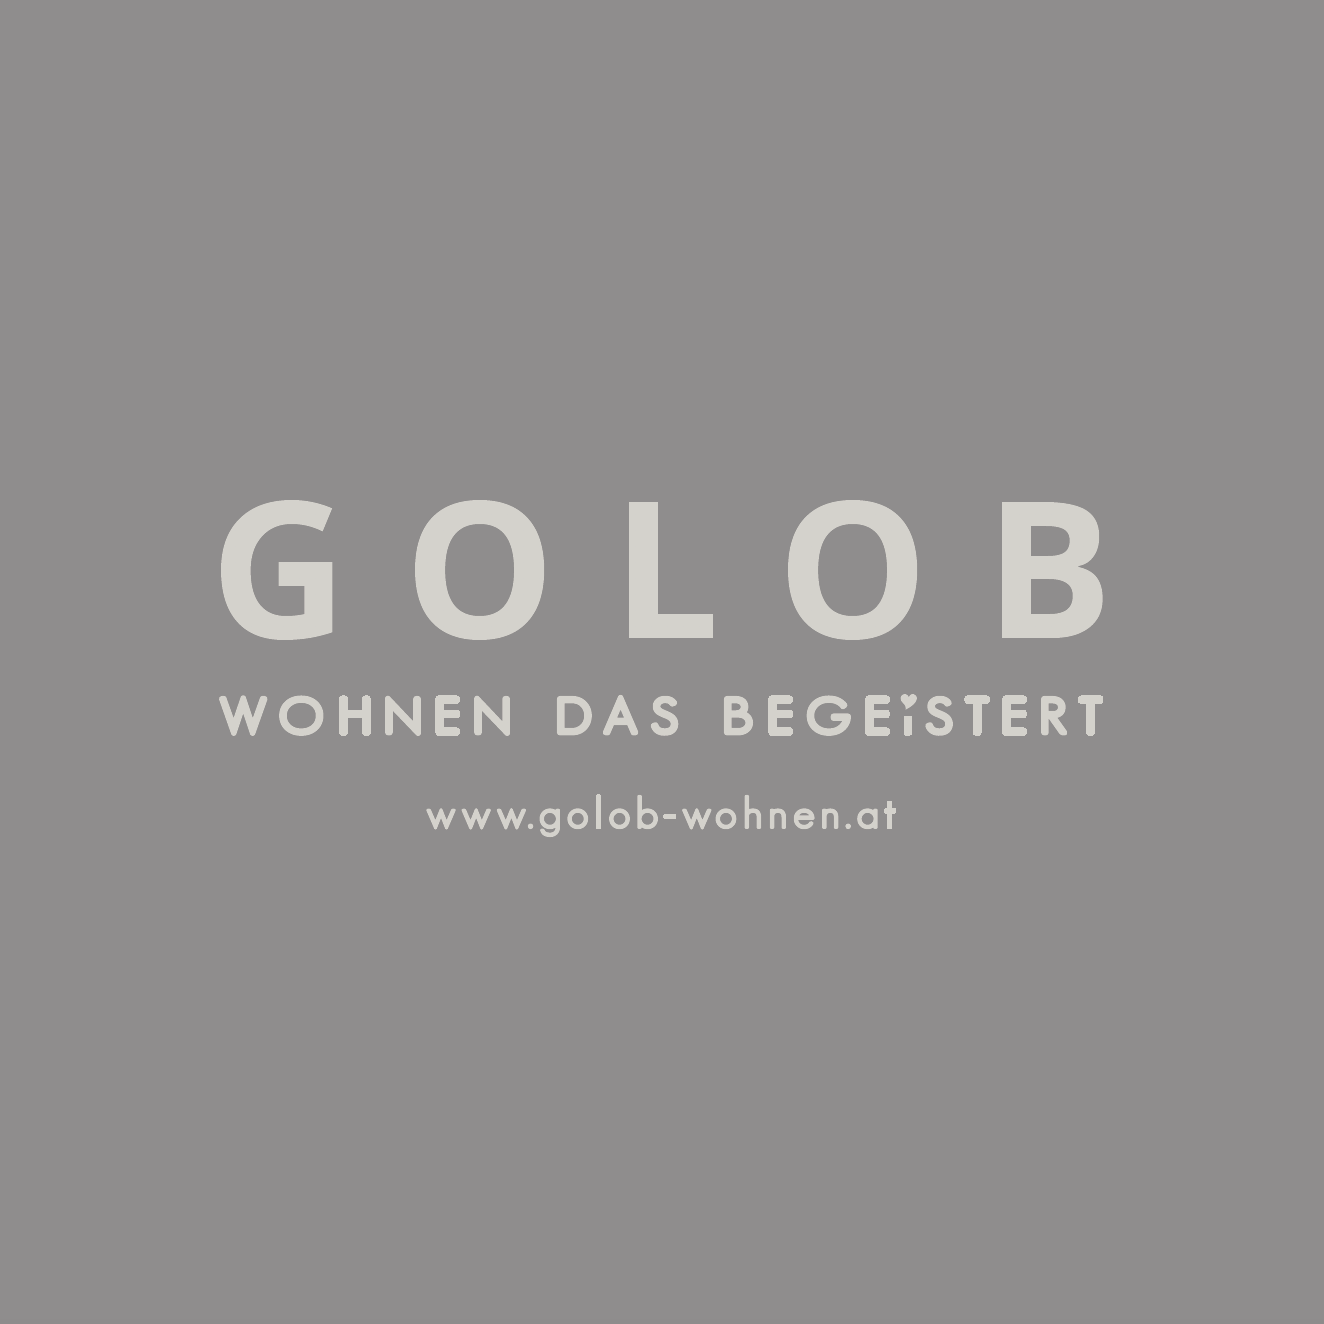 GOLOB WOHNEN GmbH - Interior Designer - Baden - 02252 252248 Austria | ShowMeLocal.com